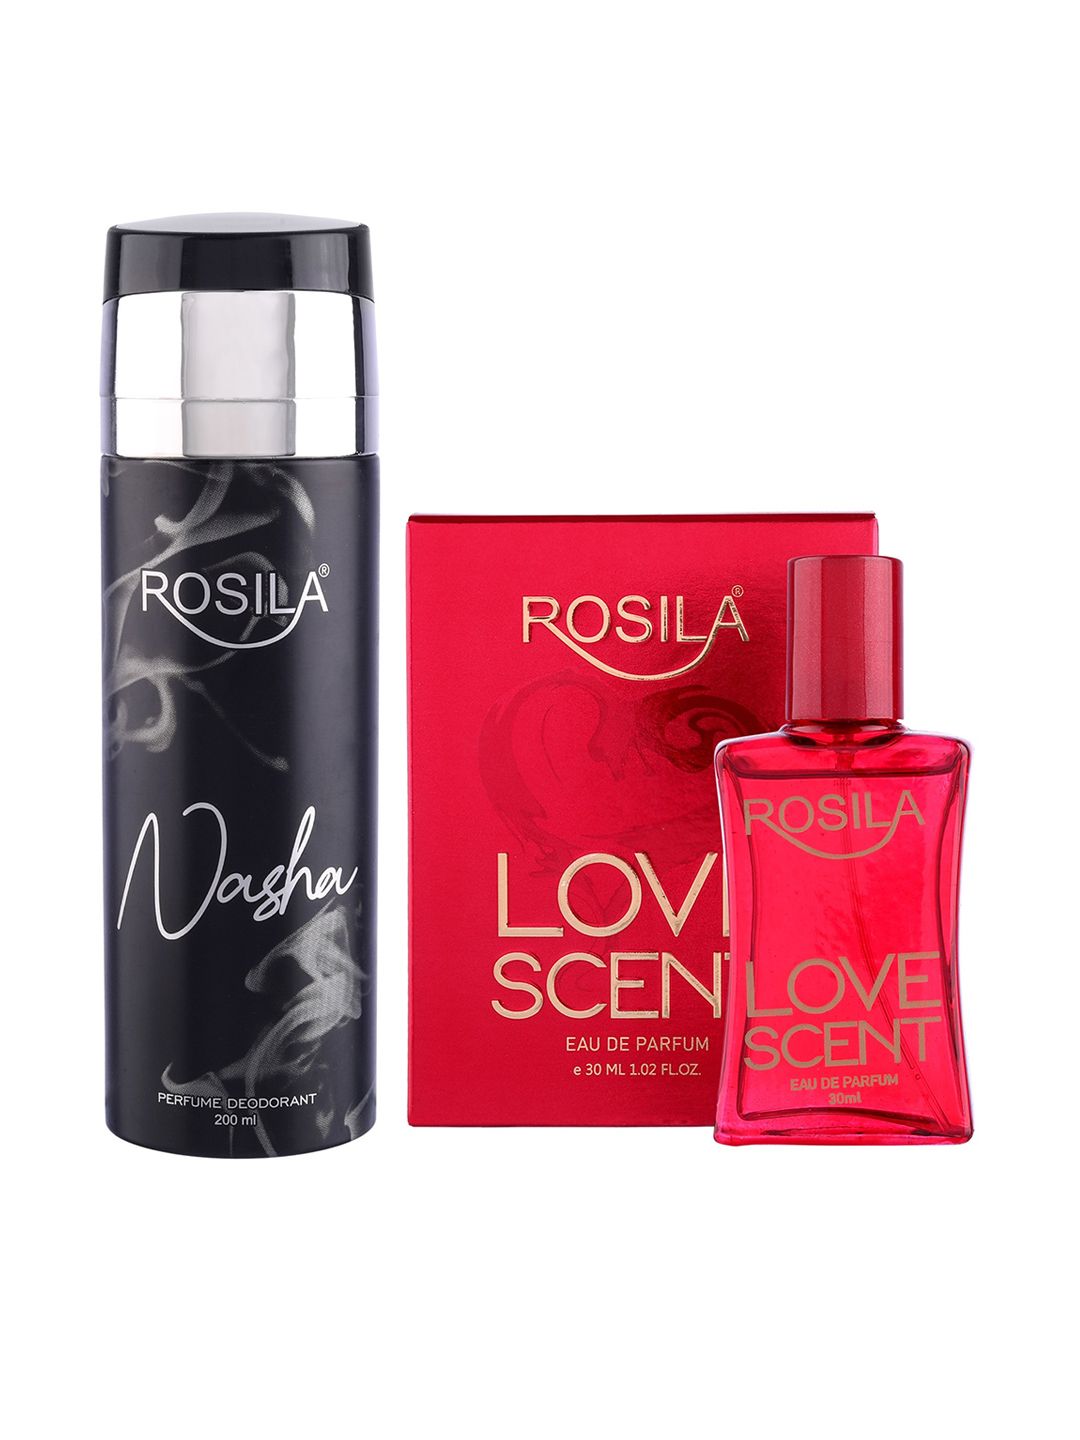 ROSILA Set of Love Scent Eau De Parfum 30 ml & Nasha Deodorant 200 ml Price in India